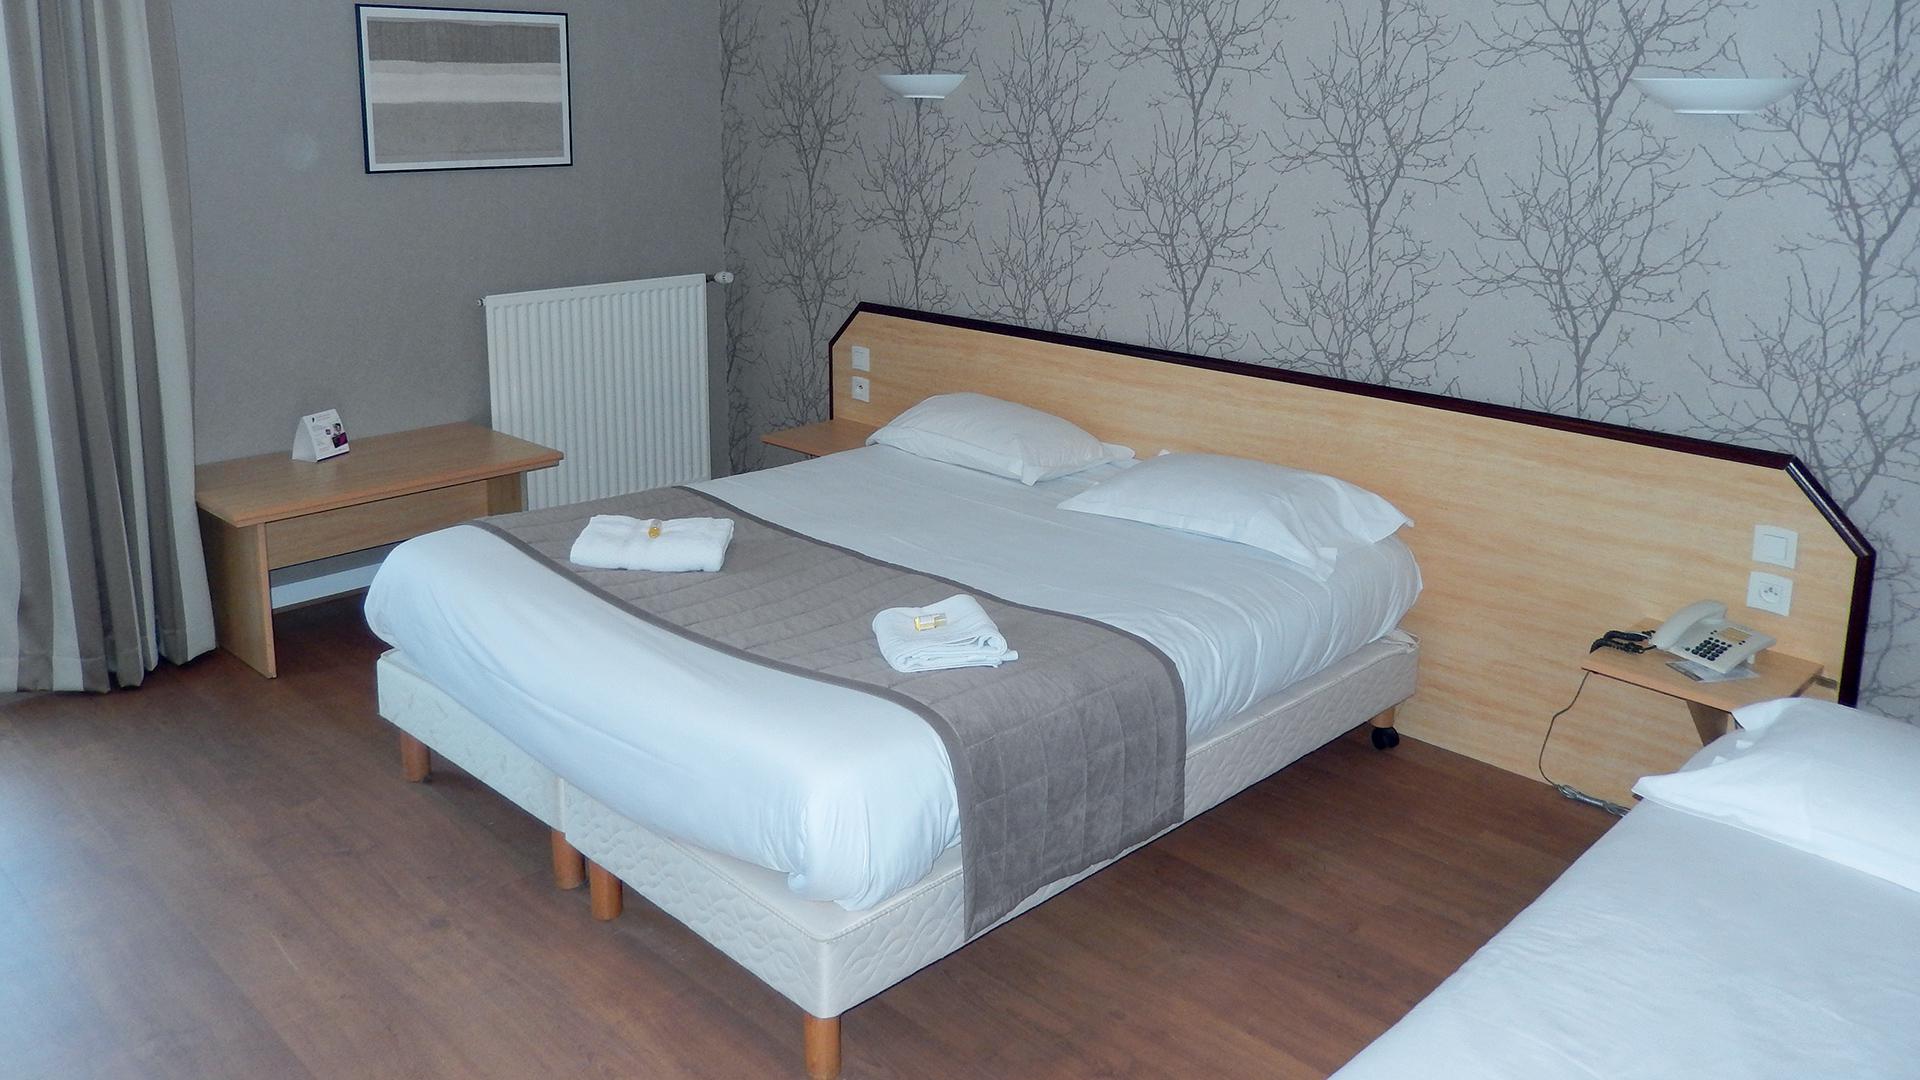 Belem Hotel - Geräumiges Zimmer mit Whirlpool und zugänglich für Personen mit eingeschränkter Mobilität